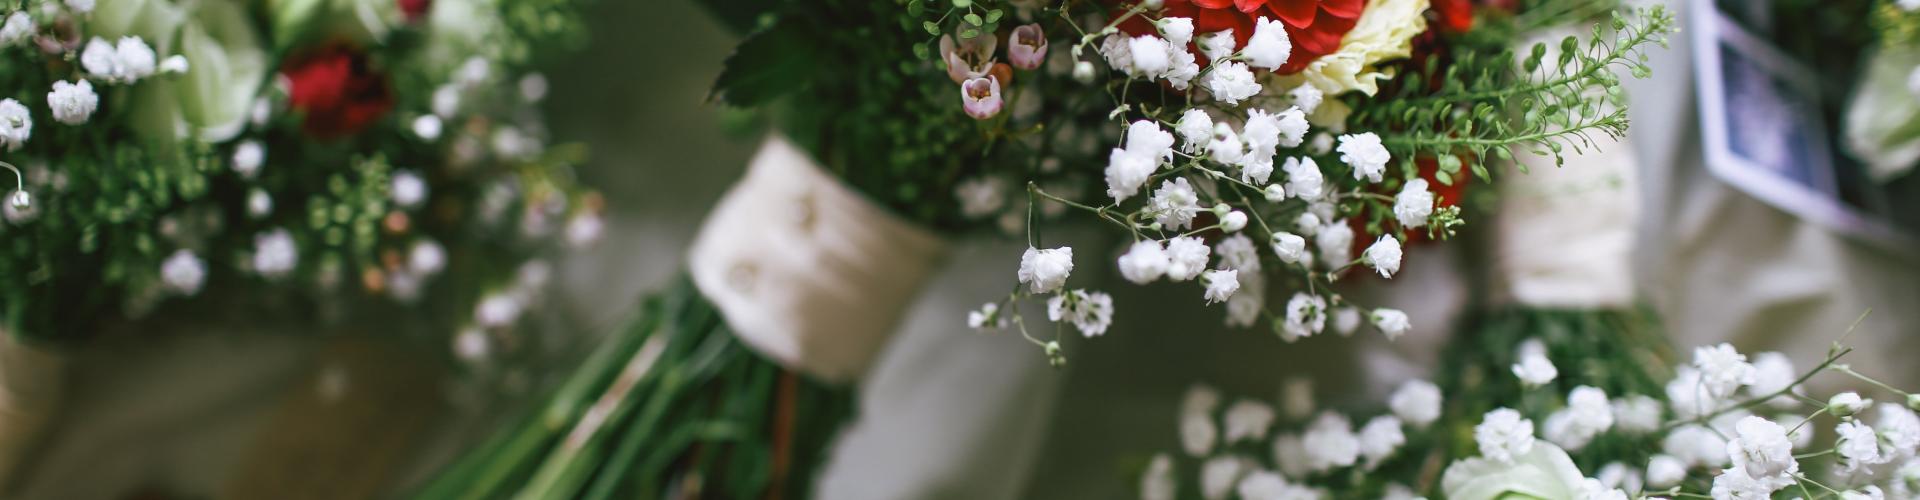 10 variétés de fleurs pour votre mariage de cet été 